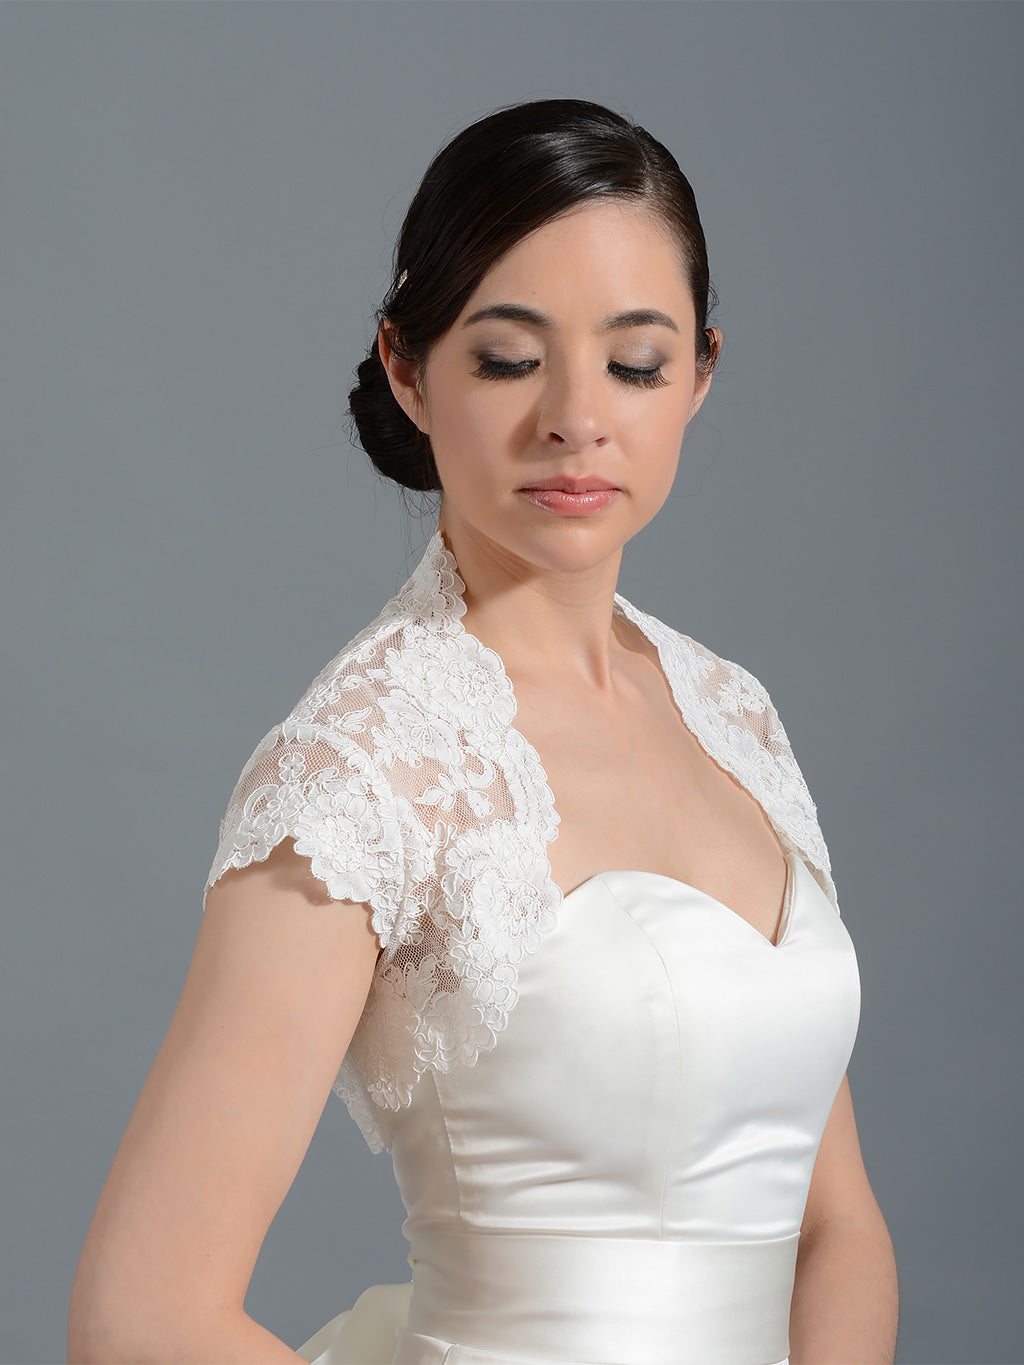 Cap sleeve bridal alencon lace bolero jacket